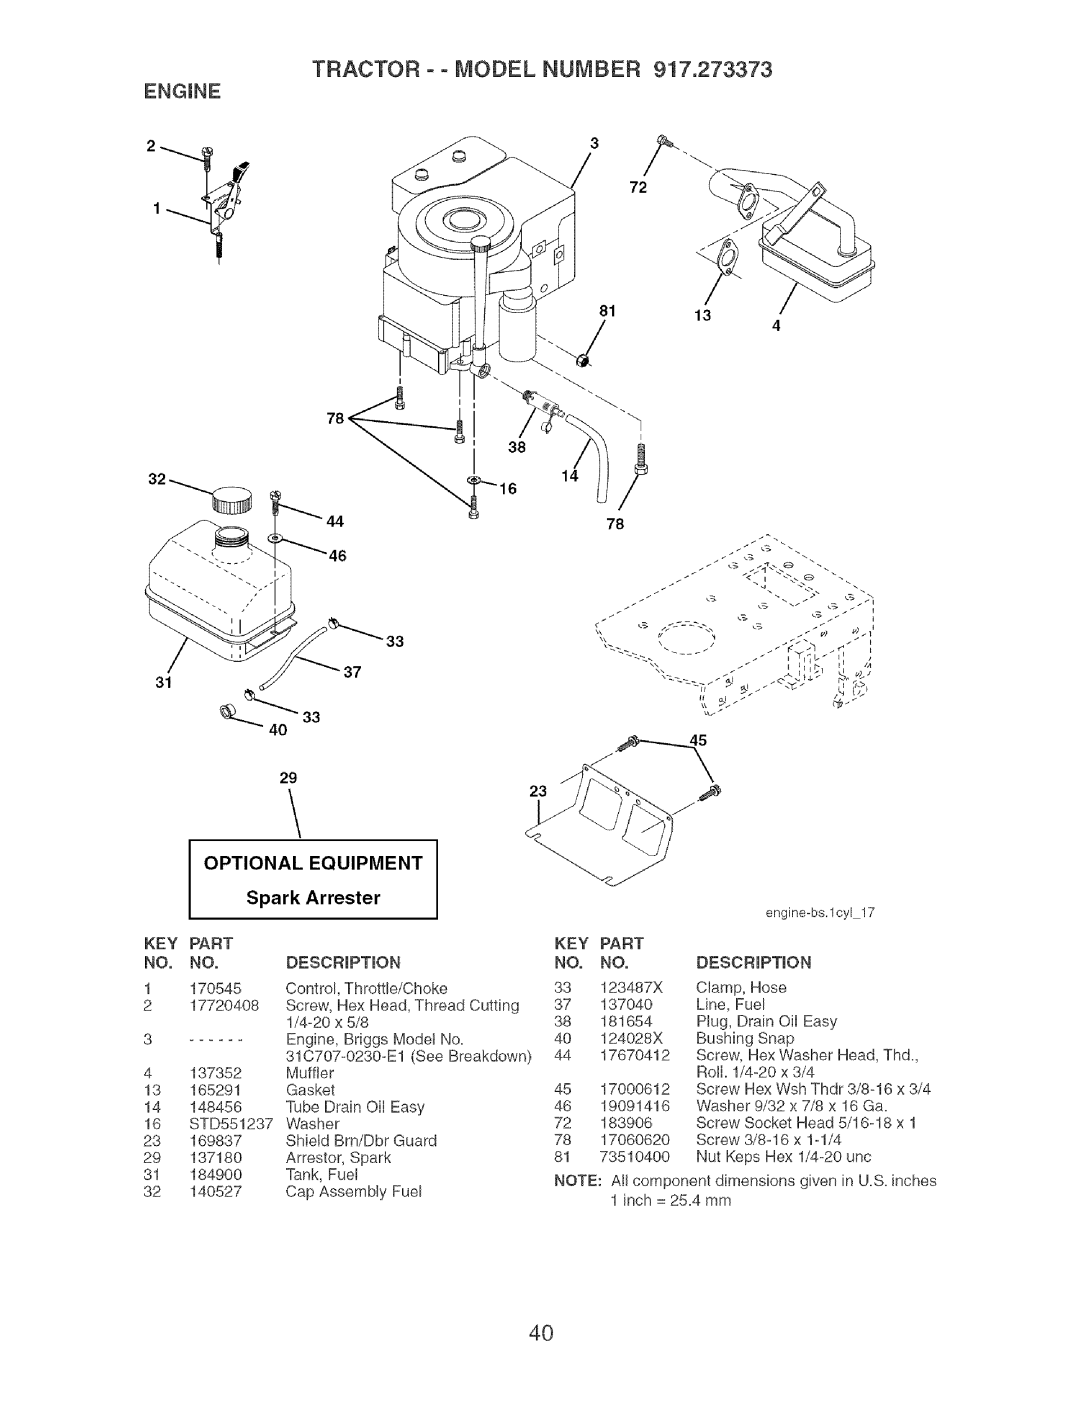 Craftsman 917.273373 owner manual TRACTOR o o MODEL NUMBER, Equipment, Spark Arrester, Part 